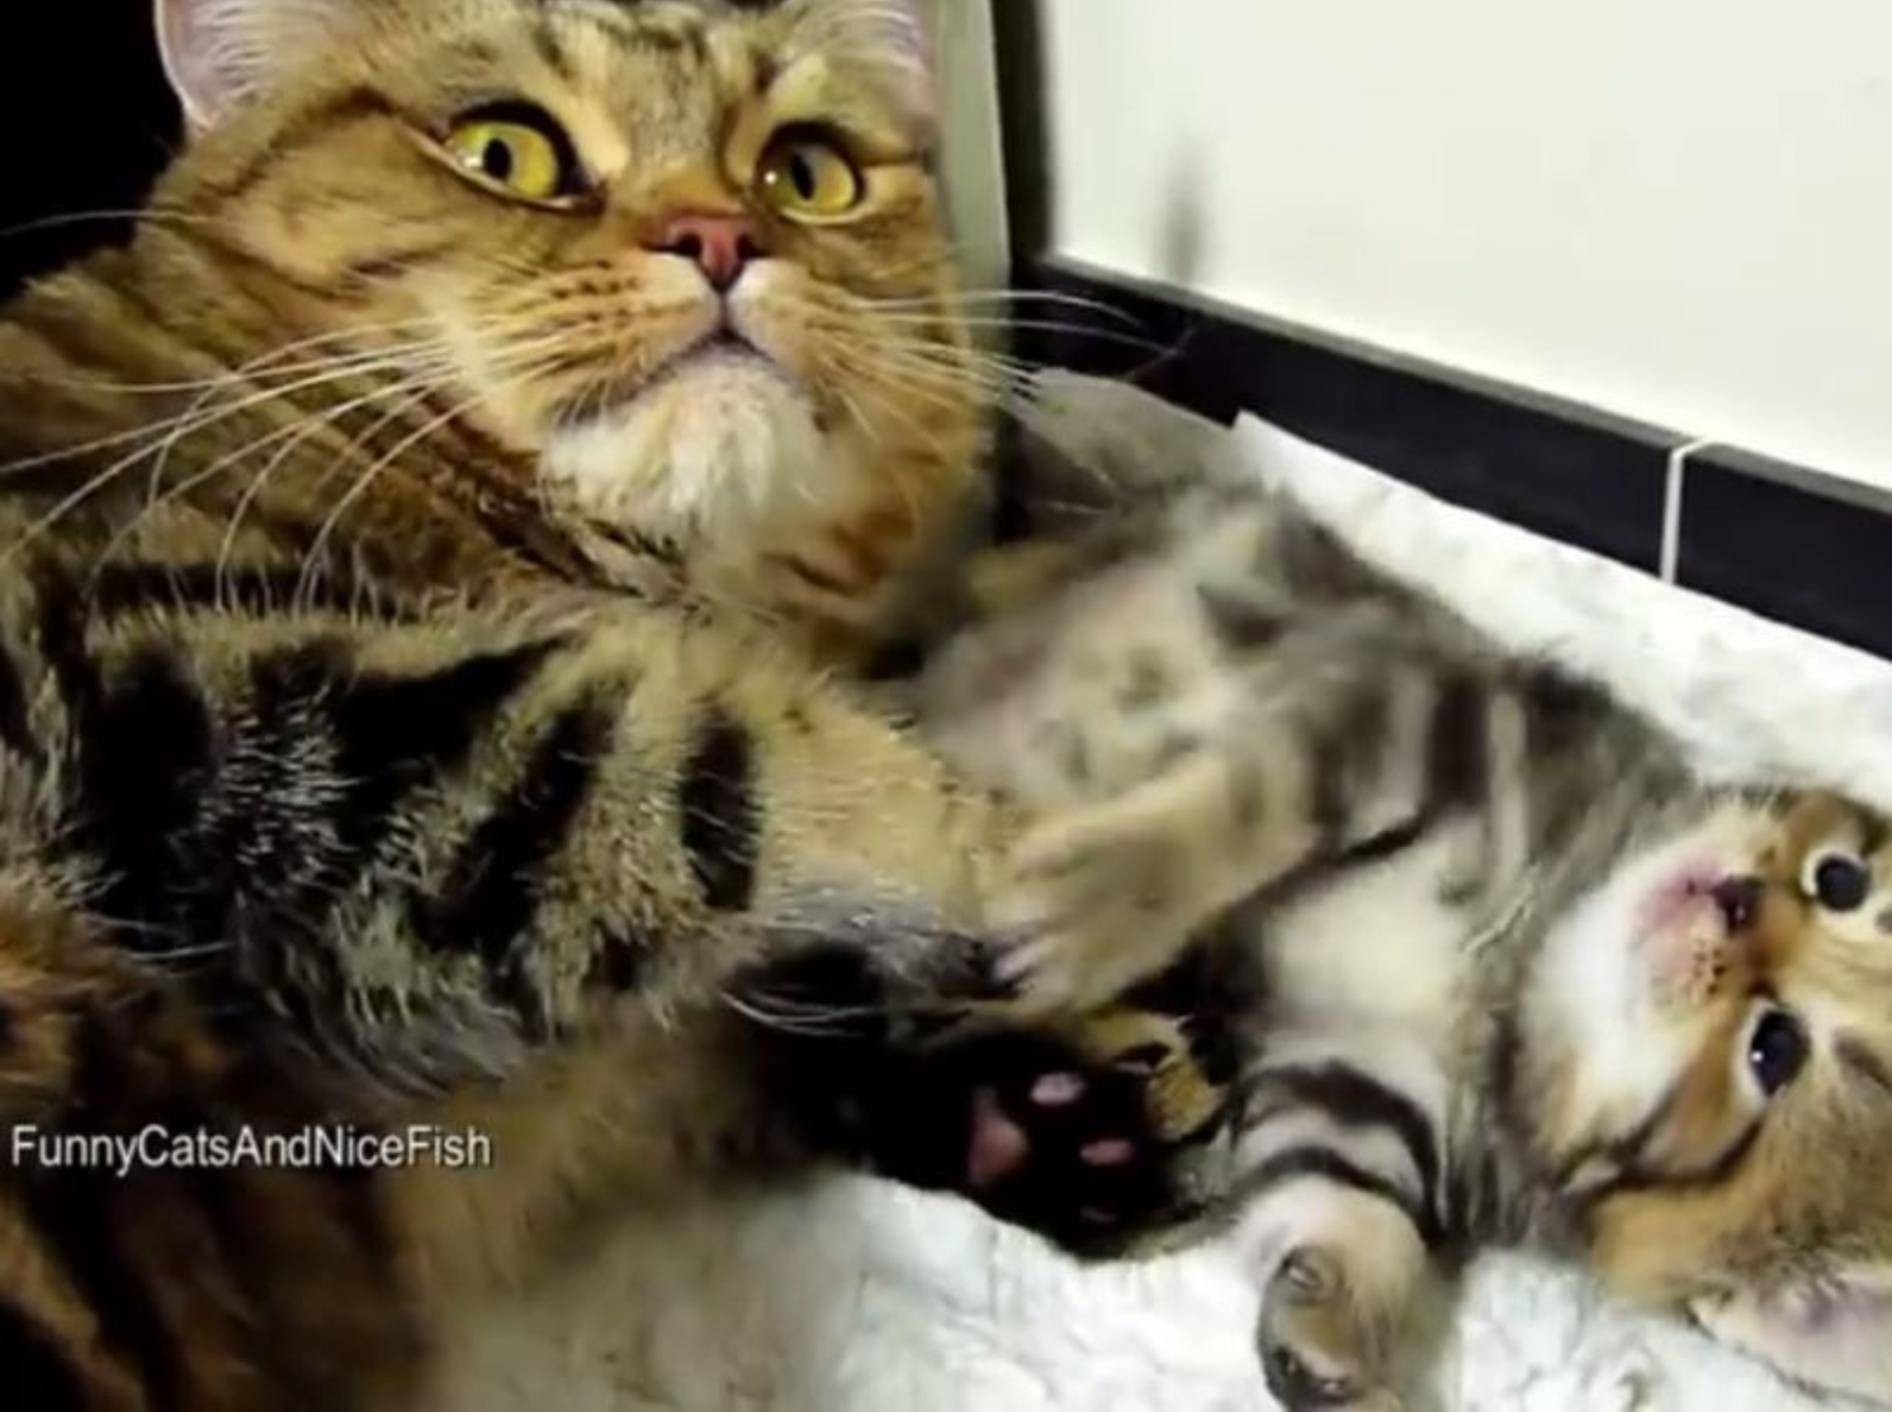 Ganz ruhig, kleines Katzenbaby, Mama passt auf dich auf – YouTube / Funnycatsandnicefish